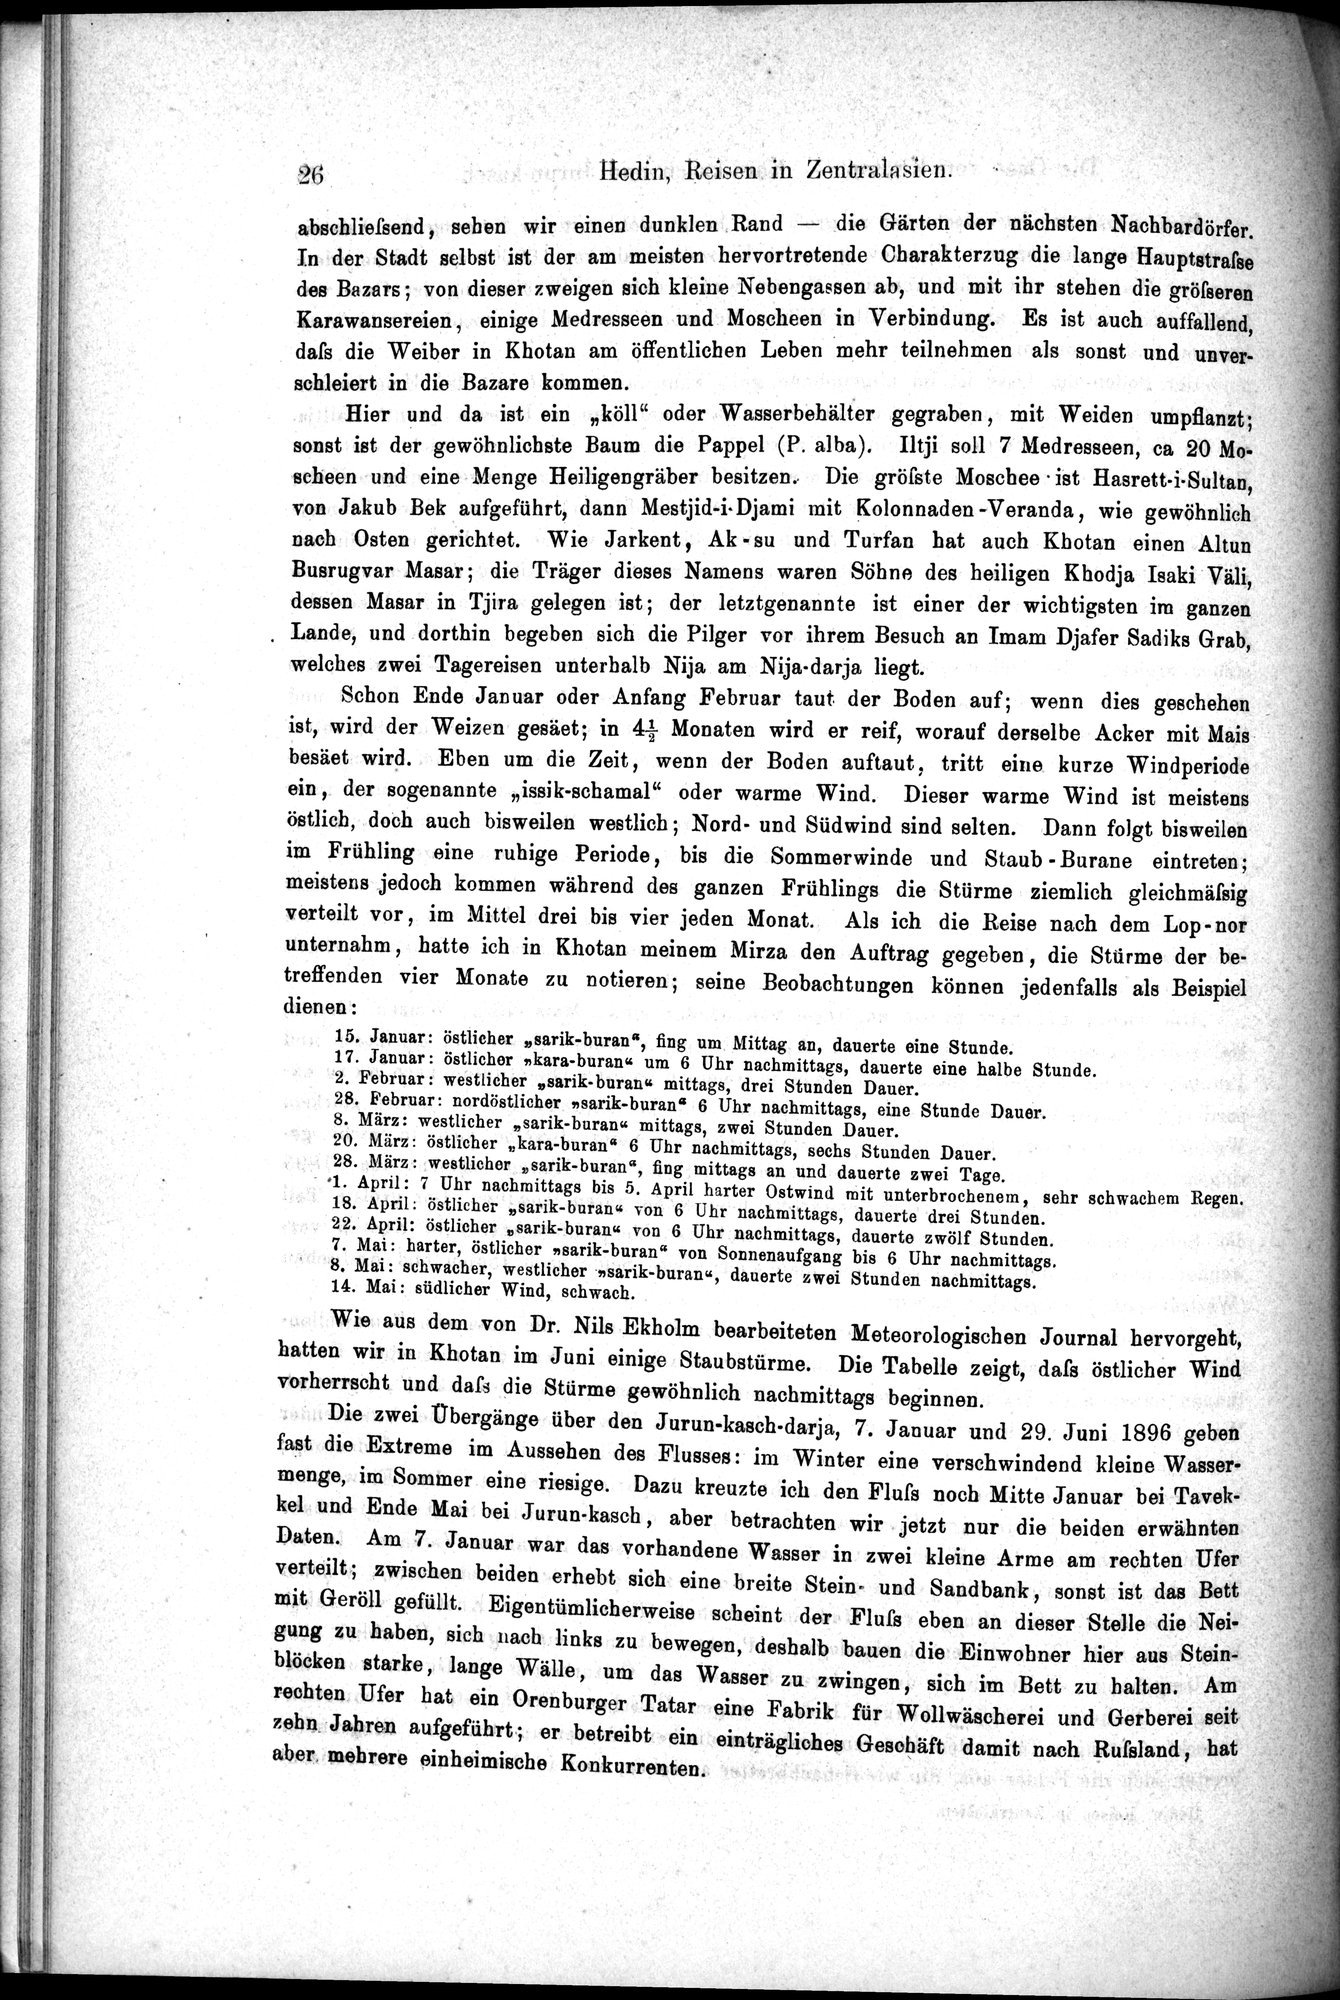 Die Geographische-Wissenschaftlichen Ergebnisse meiner Reisen in Zentralasien, 1894-1897 : vol.1 / Page 38 (Grayscale High Resolution Image)